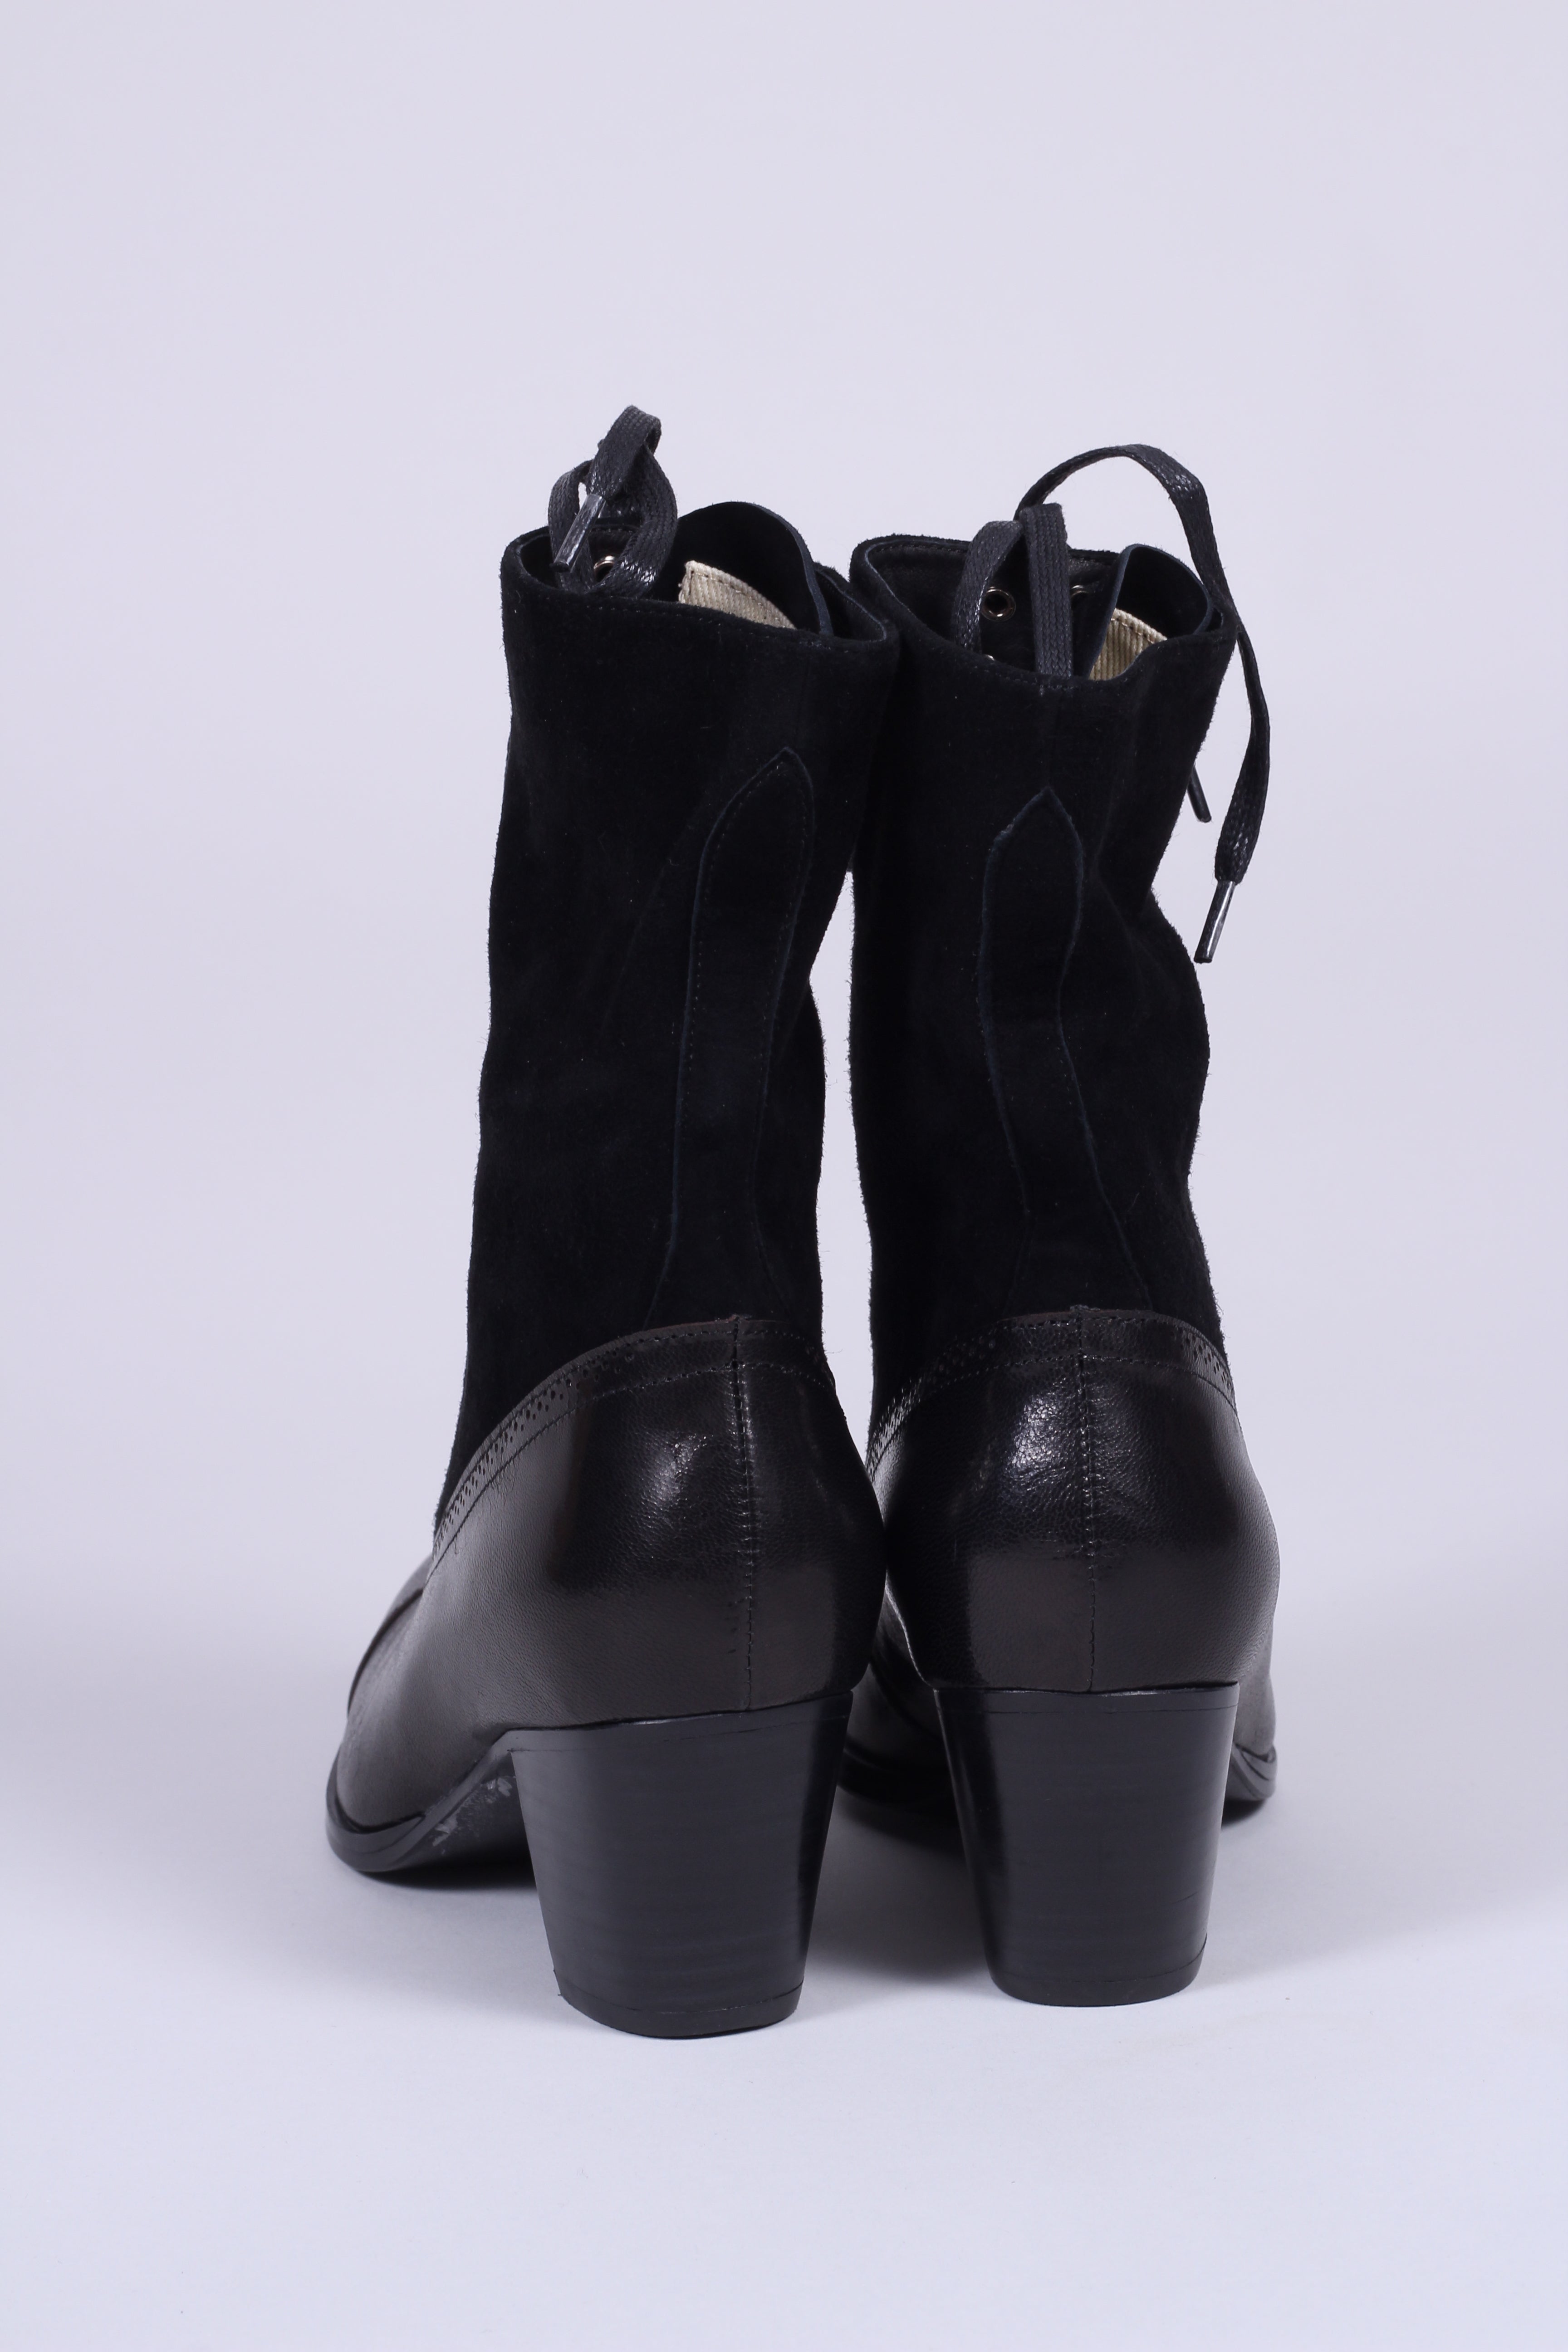 Edwardianske støvler 1900-1910, sort - Victoria